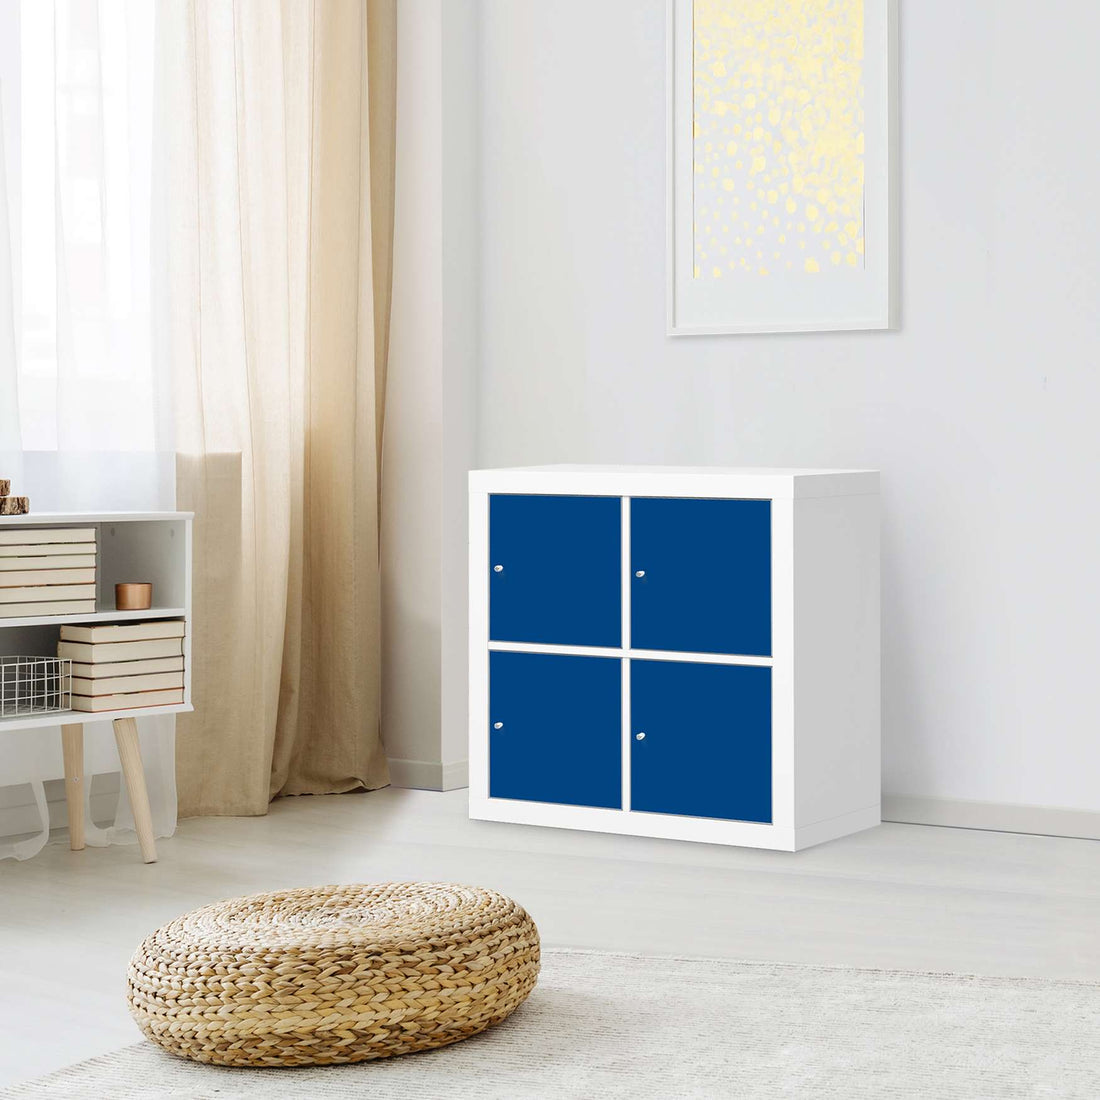 Möbelfolie Blau Dark - IKEA Expedit Regal 4 Türen - Wohnzimmer